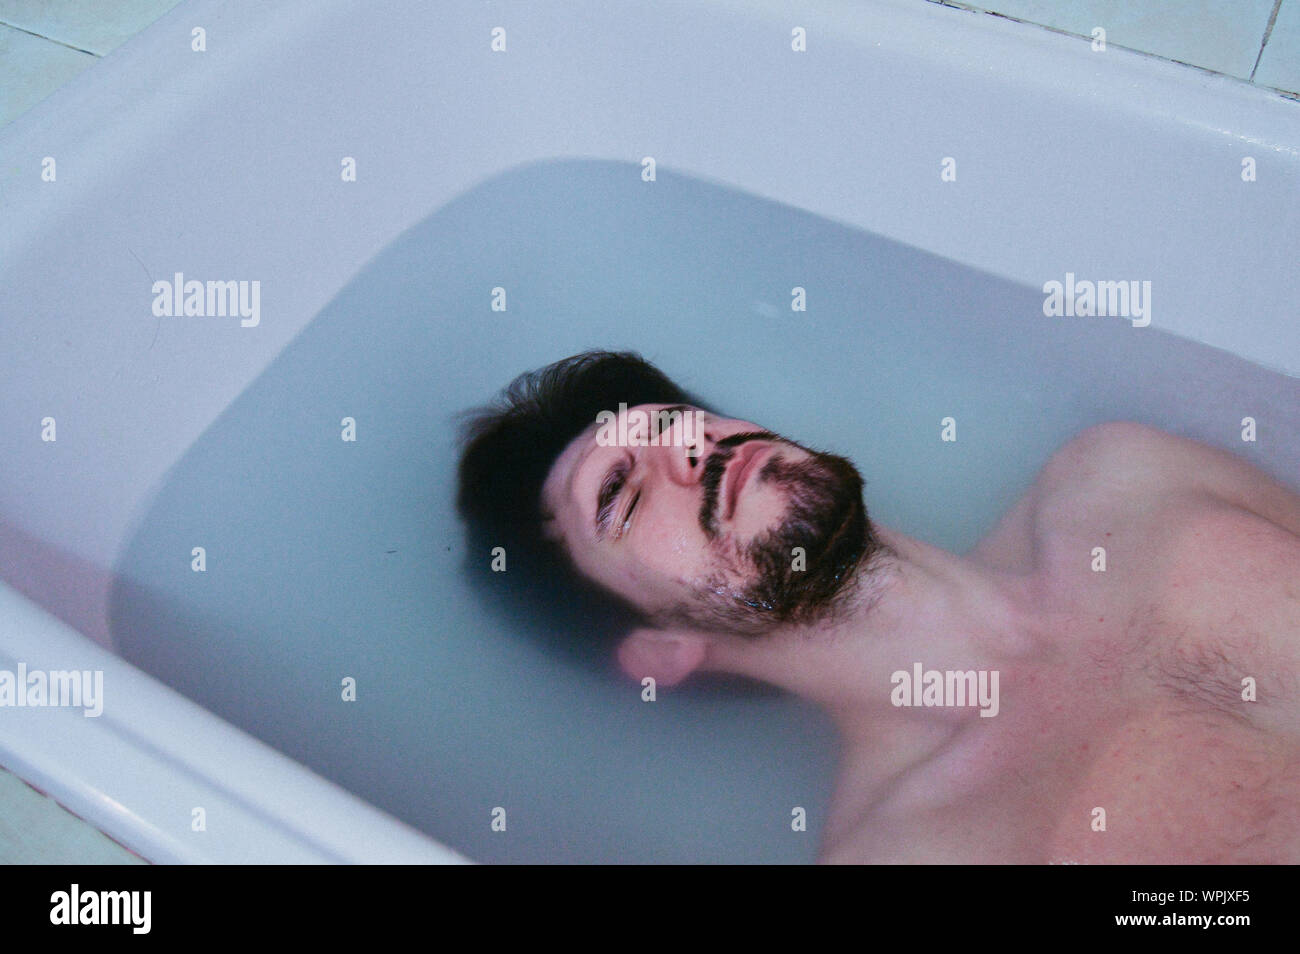 Uomo nella vasca da bagno immagini e fotografie stock ad alta risoluzione -  Alamy